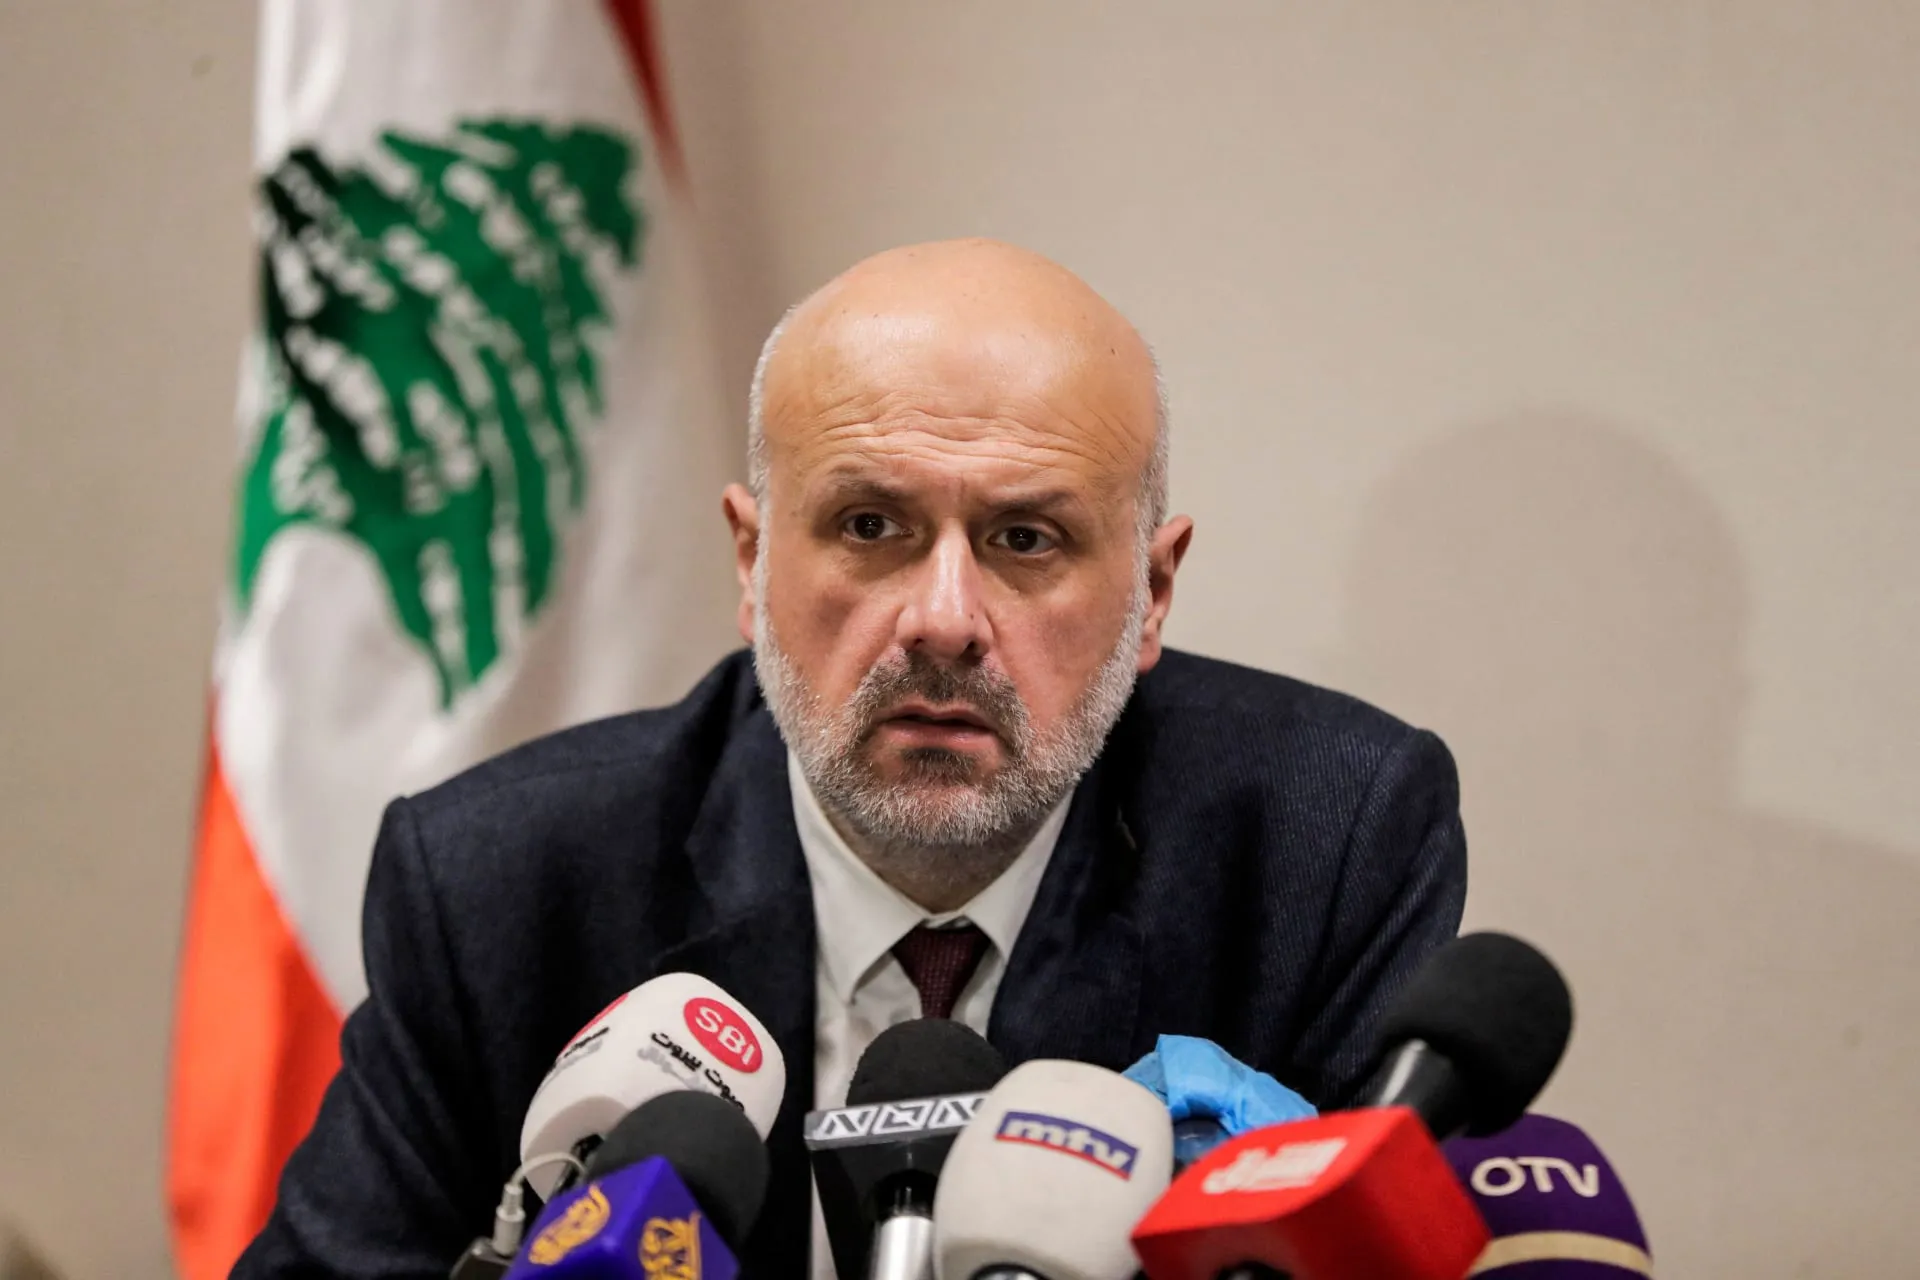 وزير الداخلية اللبناني يقول إنه لن يسمح بـ "الوجود السوري العشوائي" في لبنان